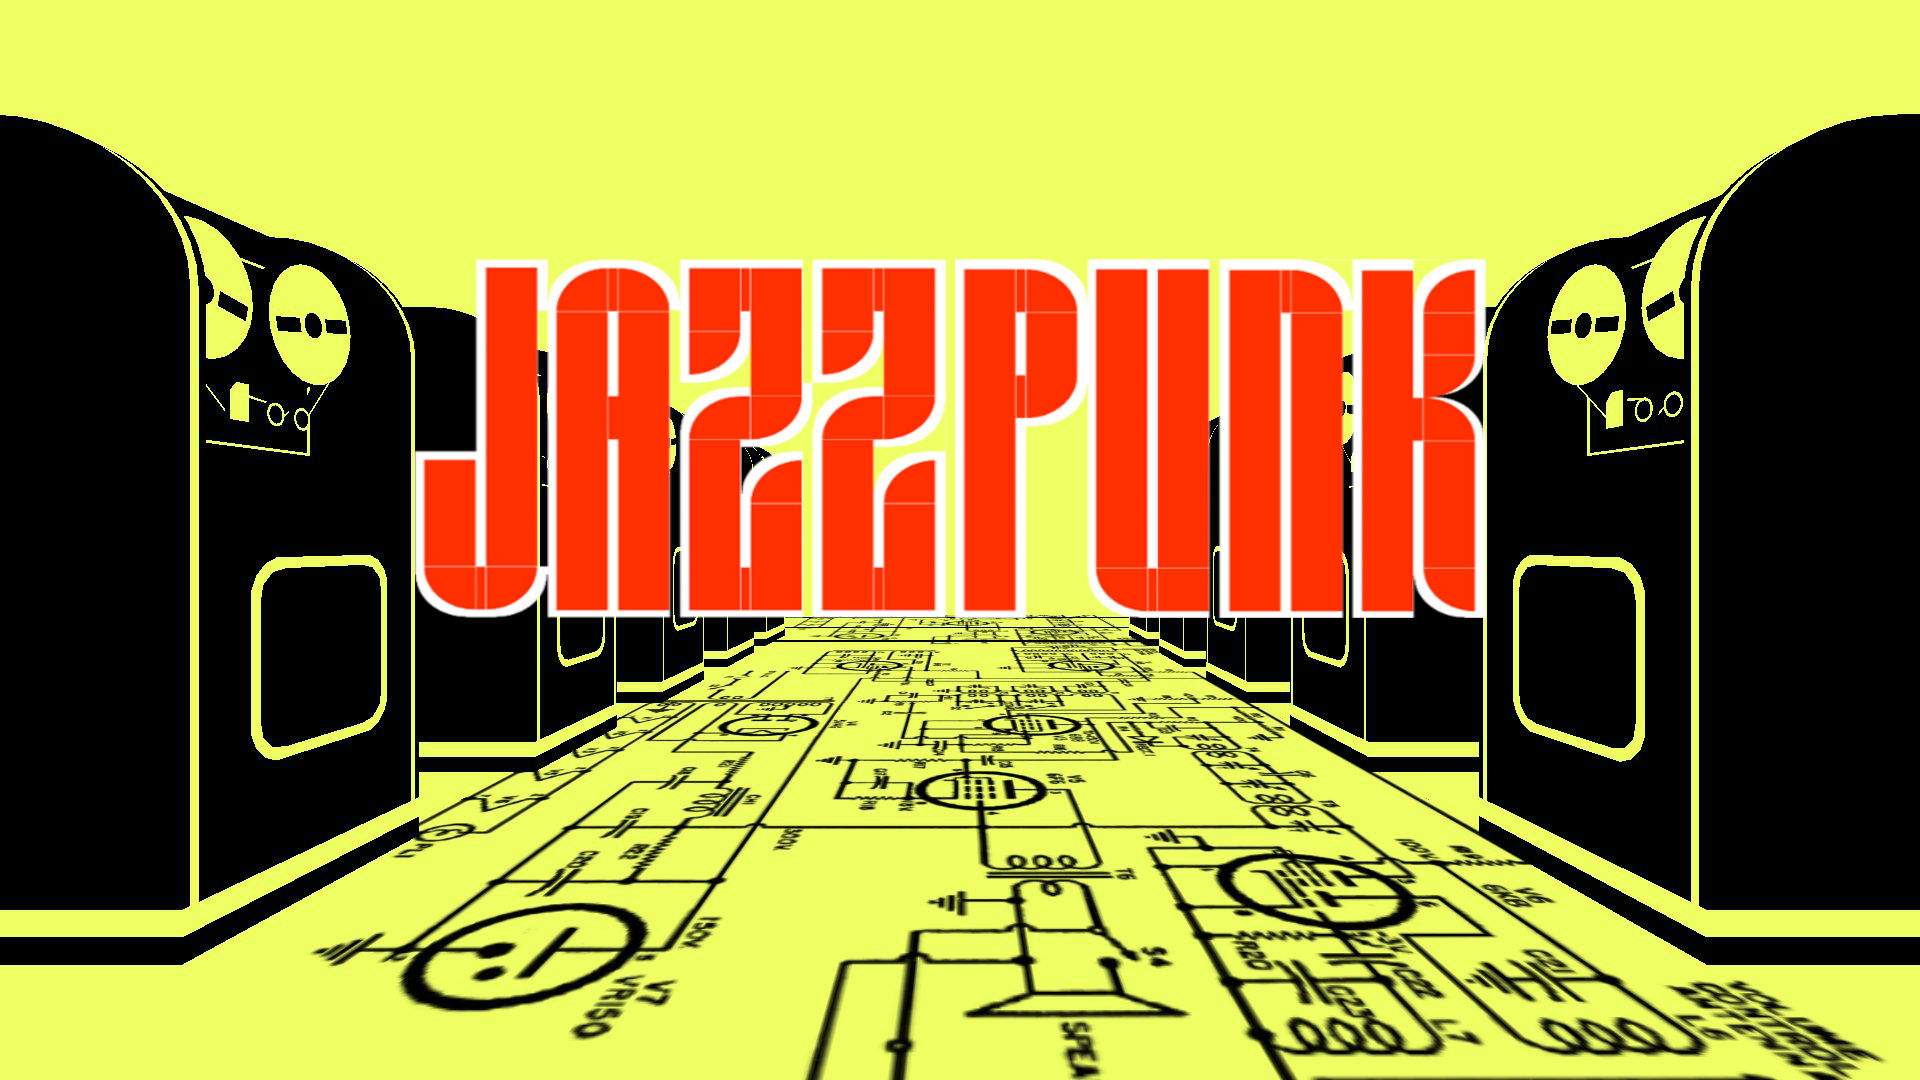 Jazzpunk Backgrounds, Compatible - PC, Mobile, Gadgets| 1920x1080 px